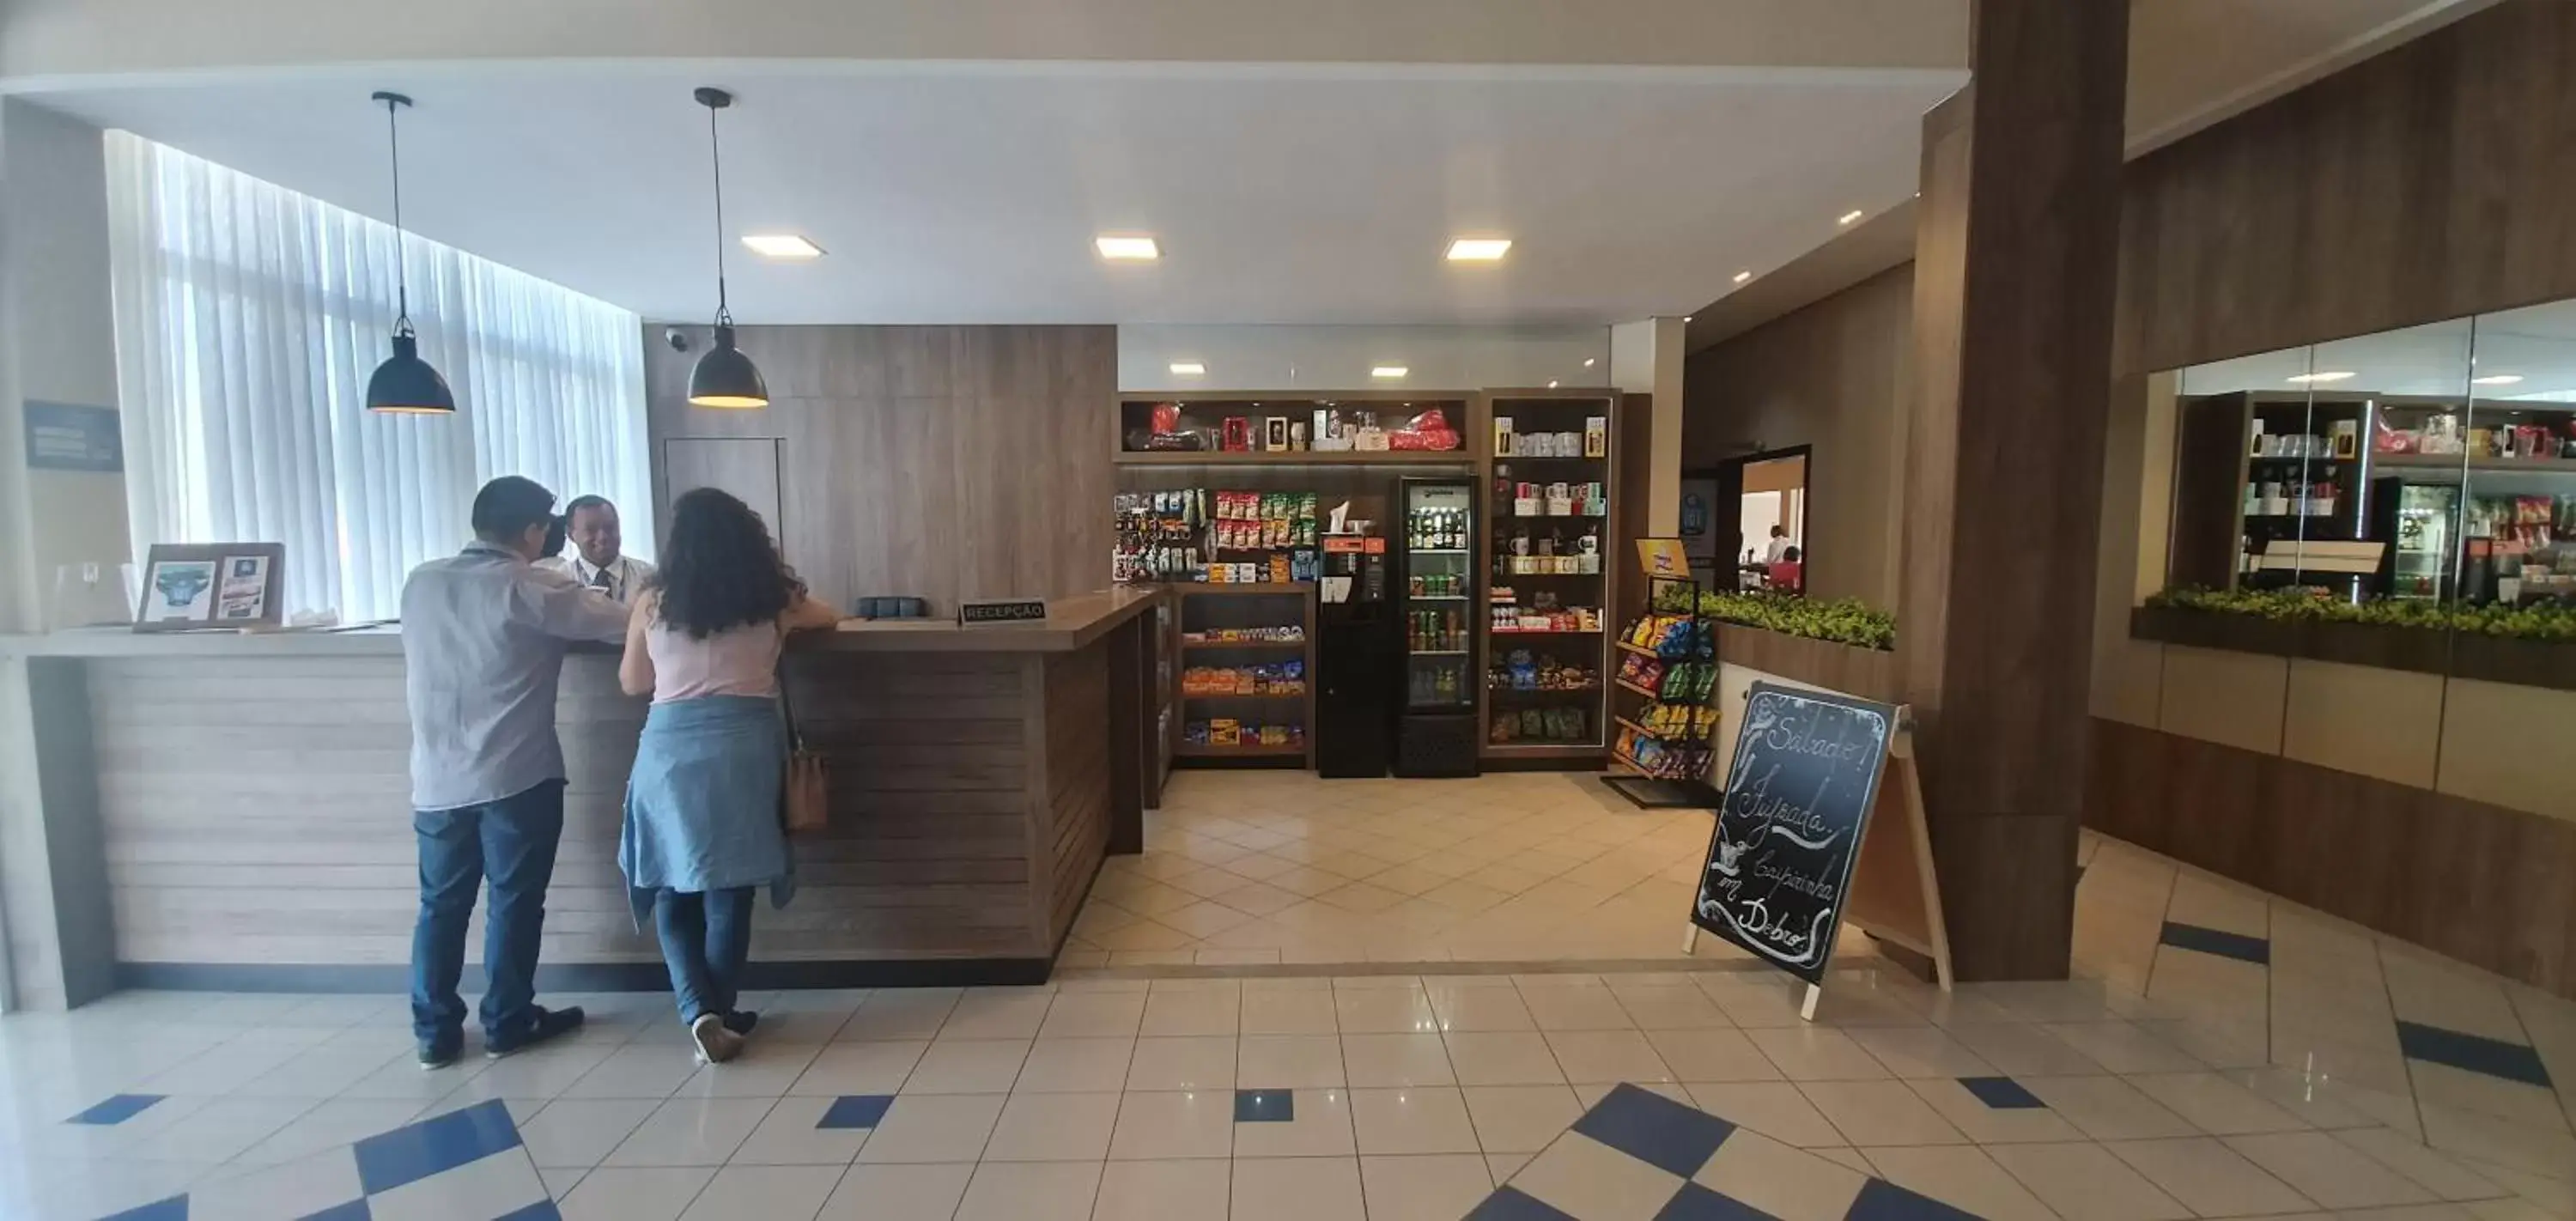 Lobby or reception in Hotel Estação 101 - Brusque